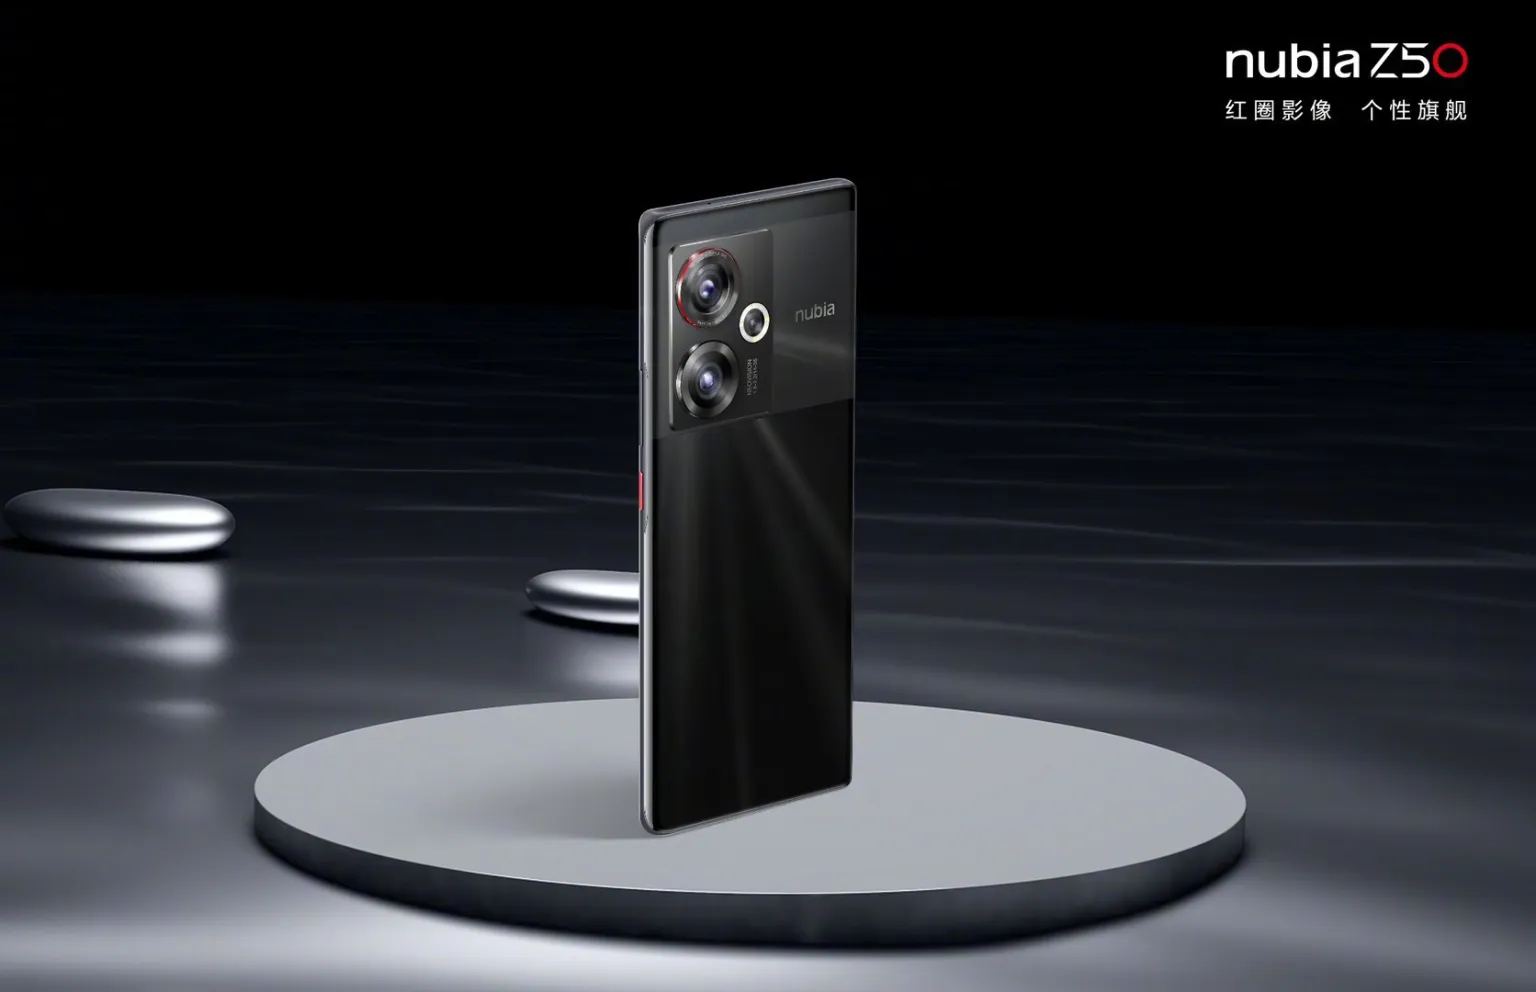 El Nubia Z50 promete ser el teléfono inteligente más completo